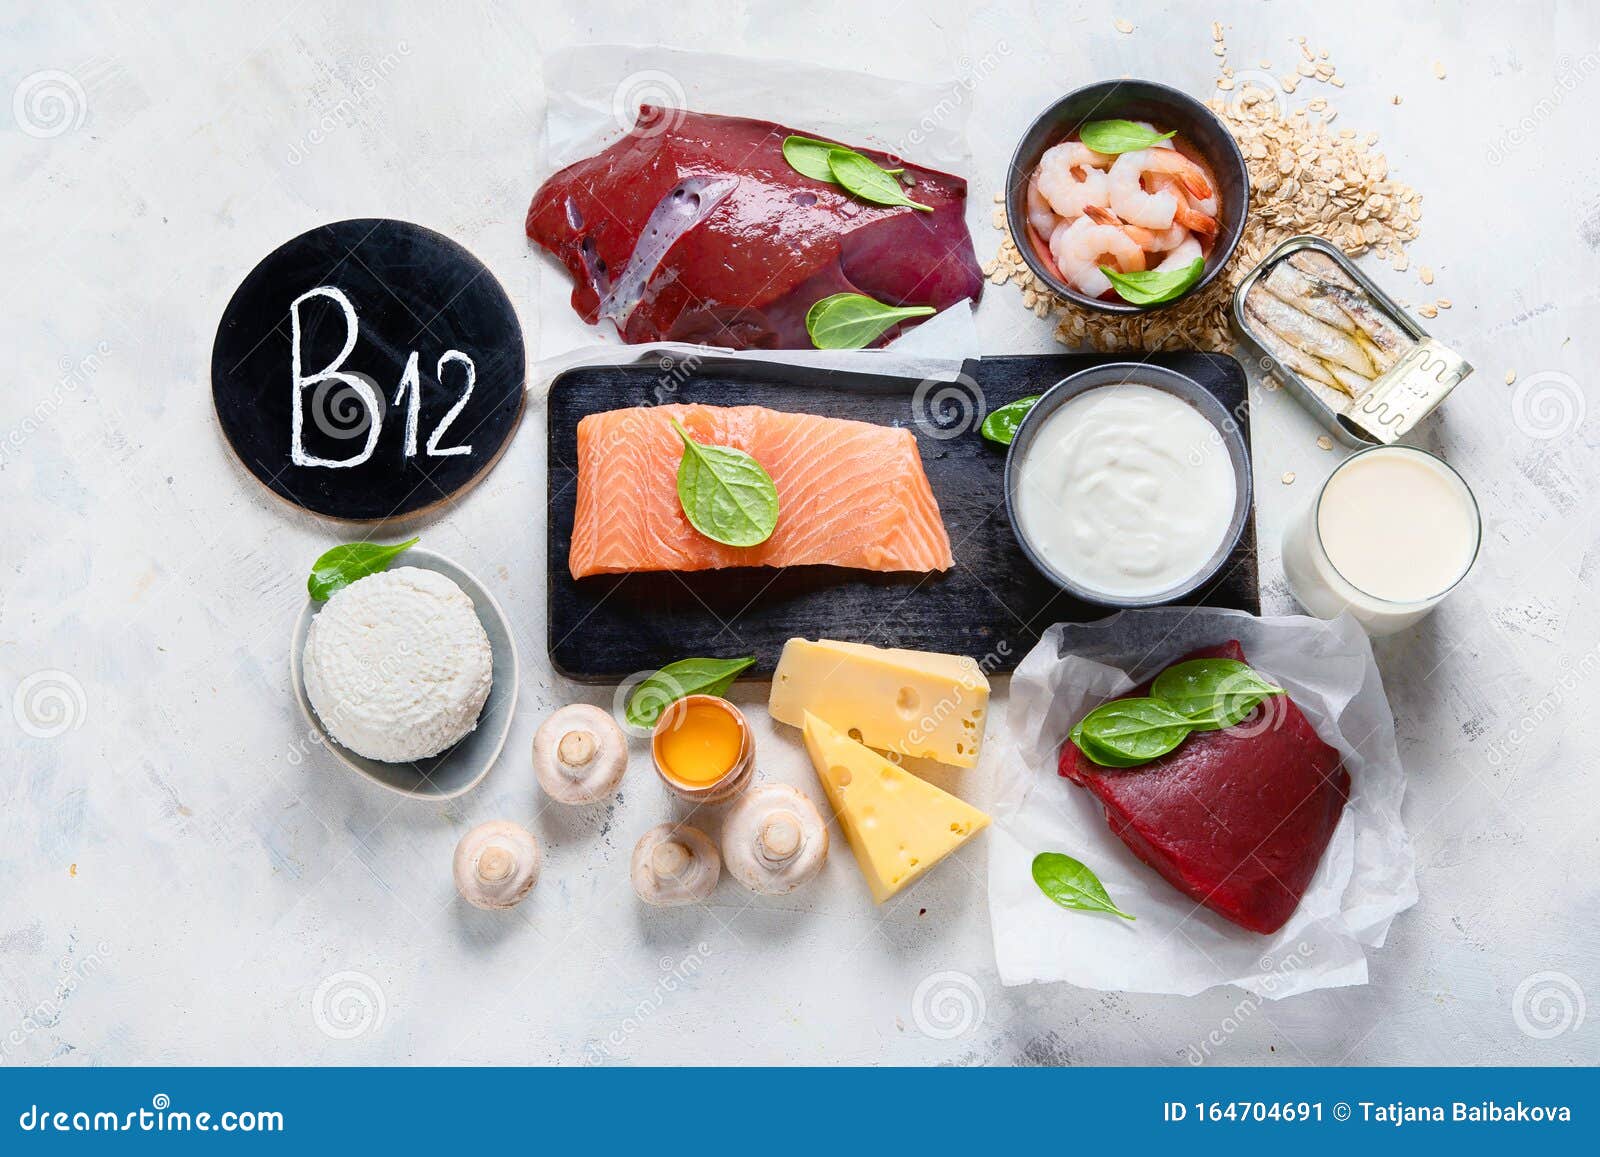 Dankzegging Ambacht Broers en zussen Natuurlijke Bronnen Van Vitamine B12 Cobalamine Stock Afbeelding - Image of  vlees, havermeel: 164704691